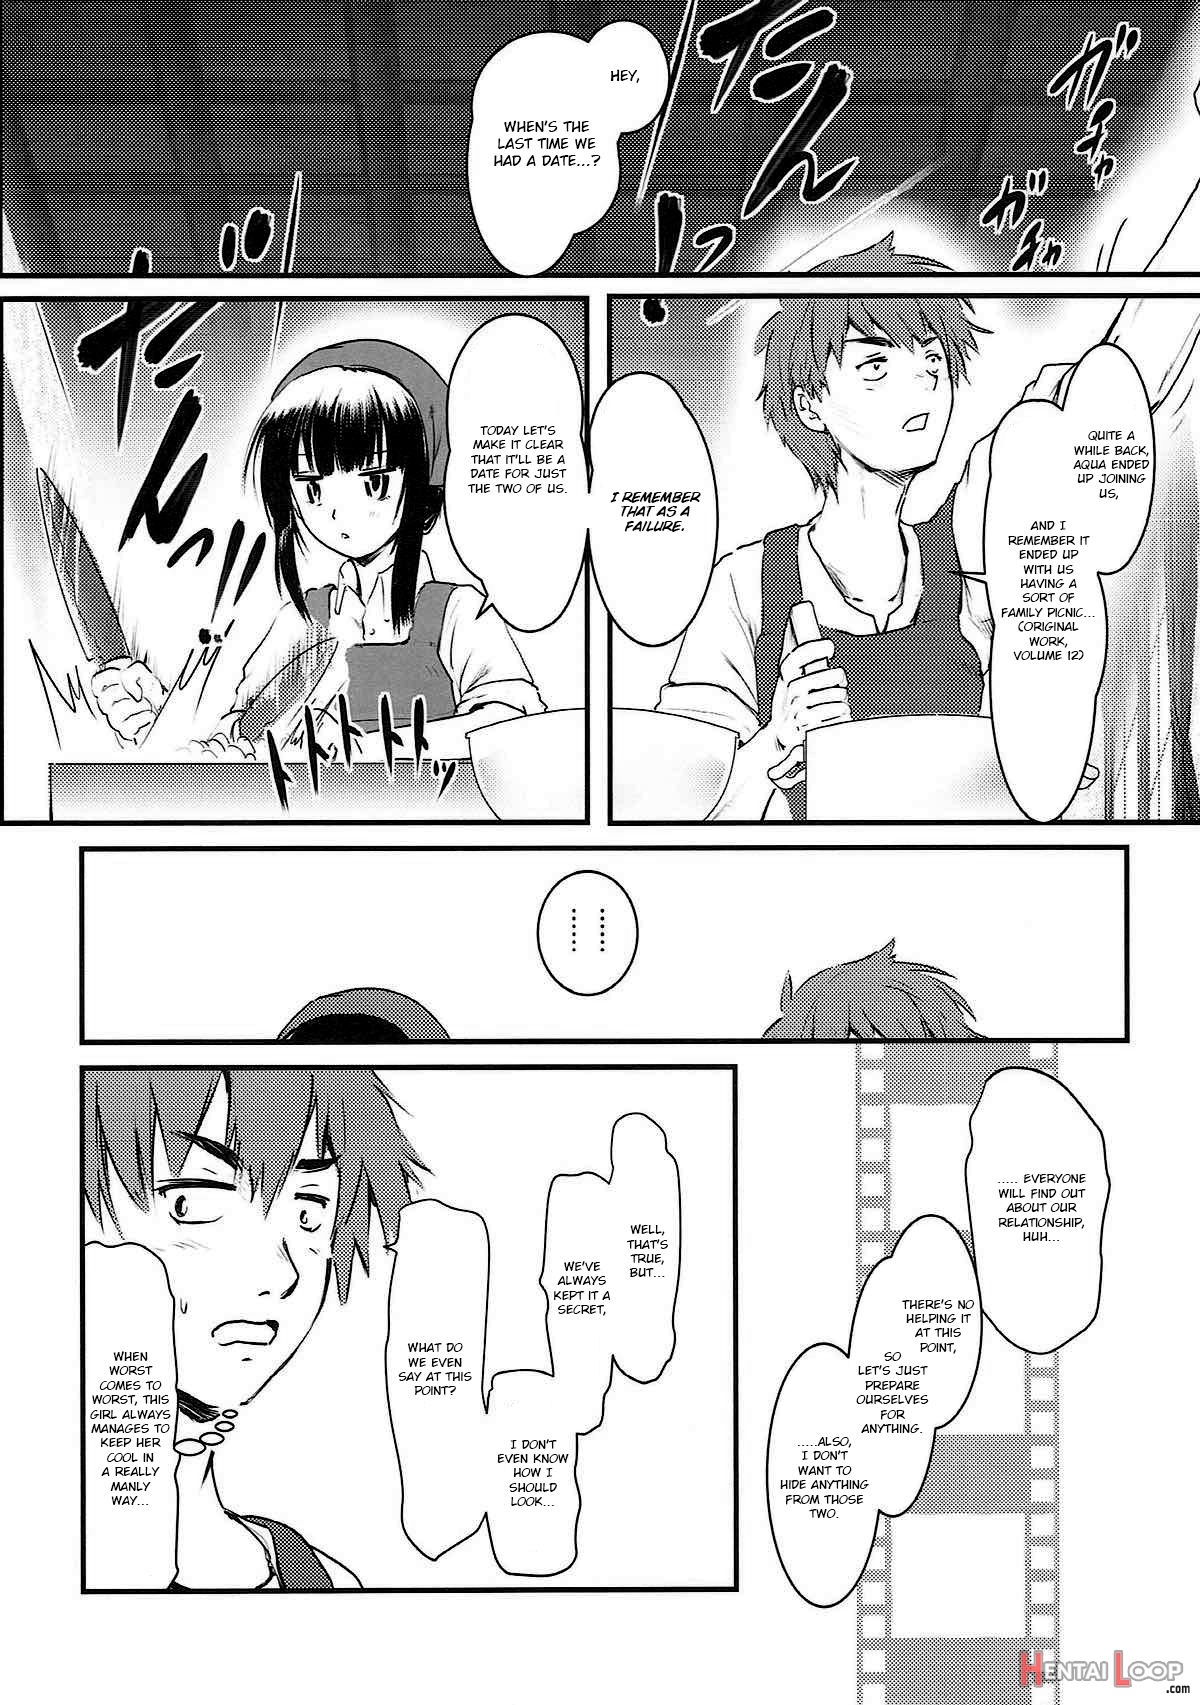 Meguicha 3 ~katou Sunahaki Aji~ page 3